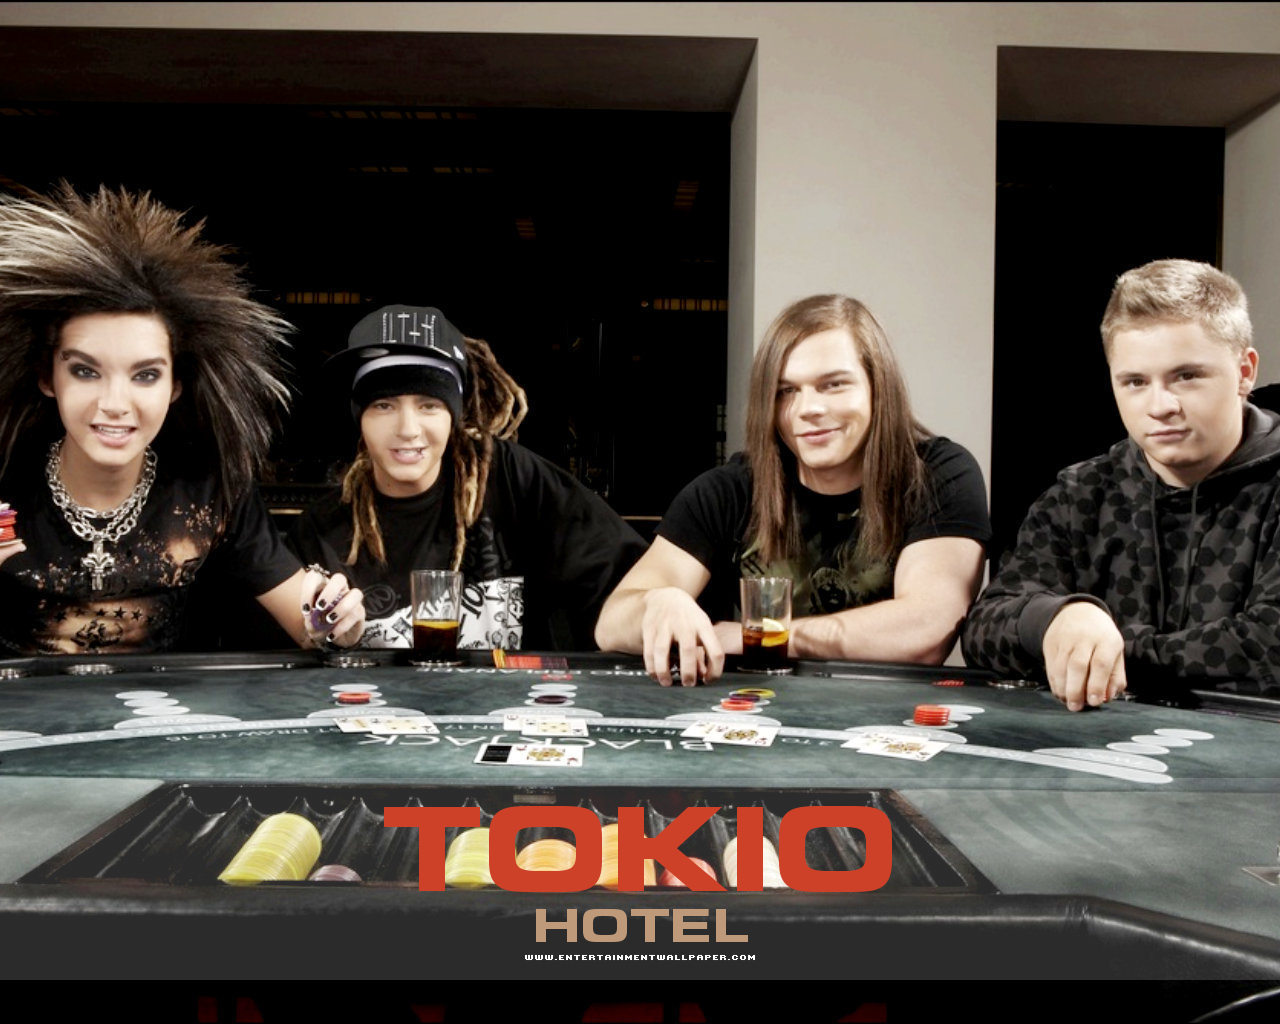 -TokioHotel♥ - Tokio Hotel 1280x1024